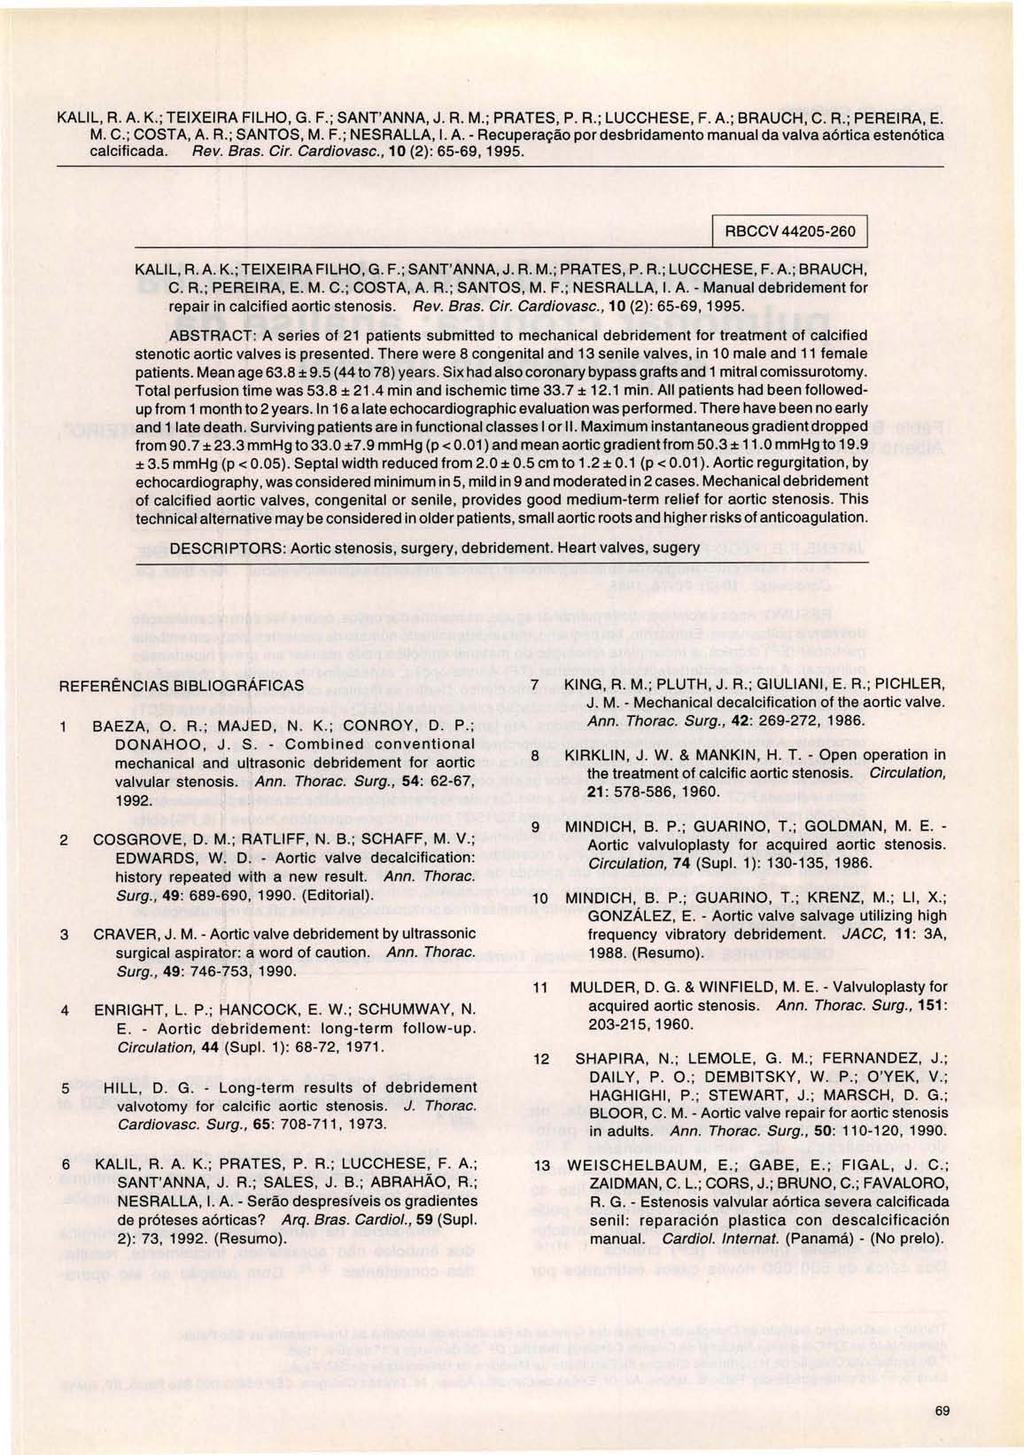 KALlL, R. A. K.; TEIXEIRA FILHO, G. F.; SANT'ANNA, J. R. M. ; PRATES, P. R.; LUCCHESE, F. A.; BRAUCH, C. R.; PEREIRA, E. M. C.; COSTA, A. A.; SANTOS, M. F.; NESRALLA, I. A. - Recuperação por desbridamento manual da valva aórtica estenótica calcificada.